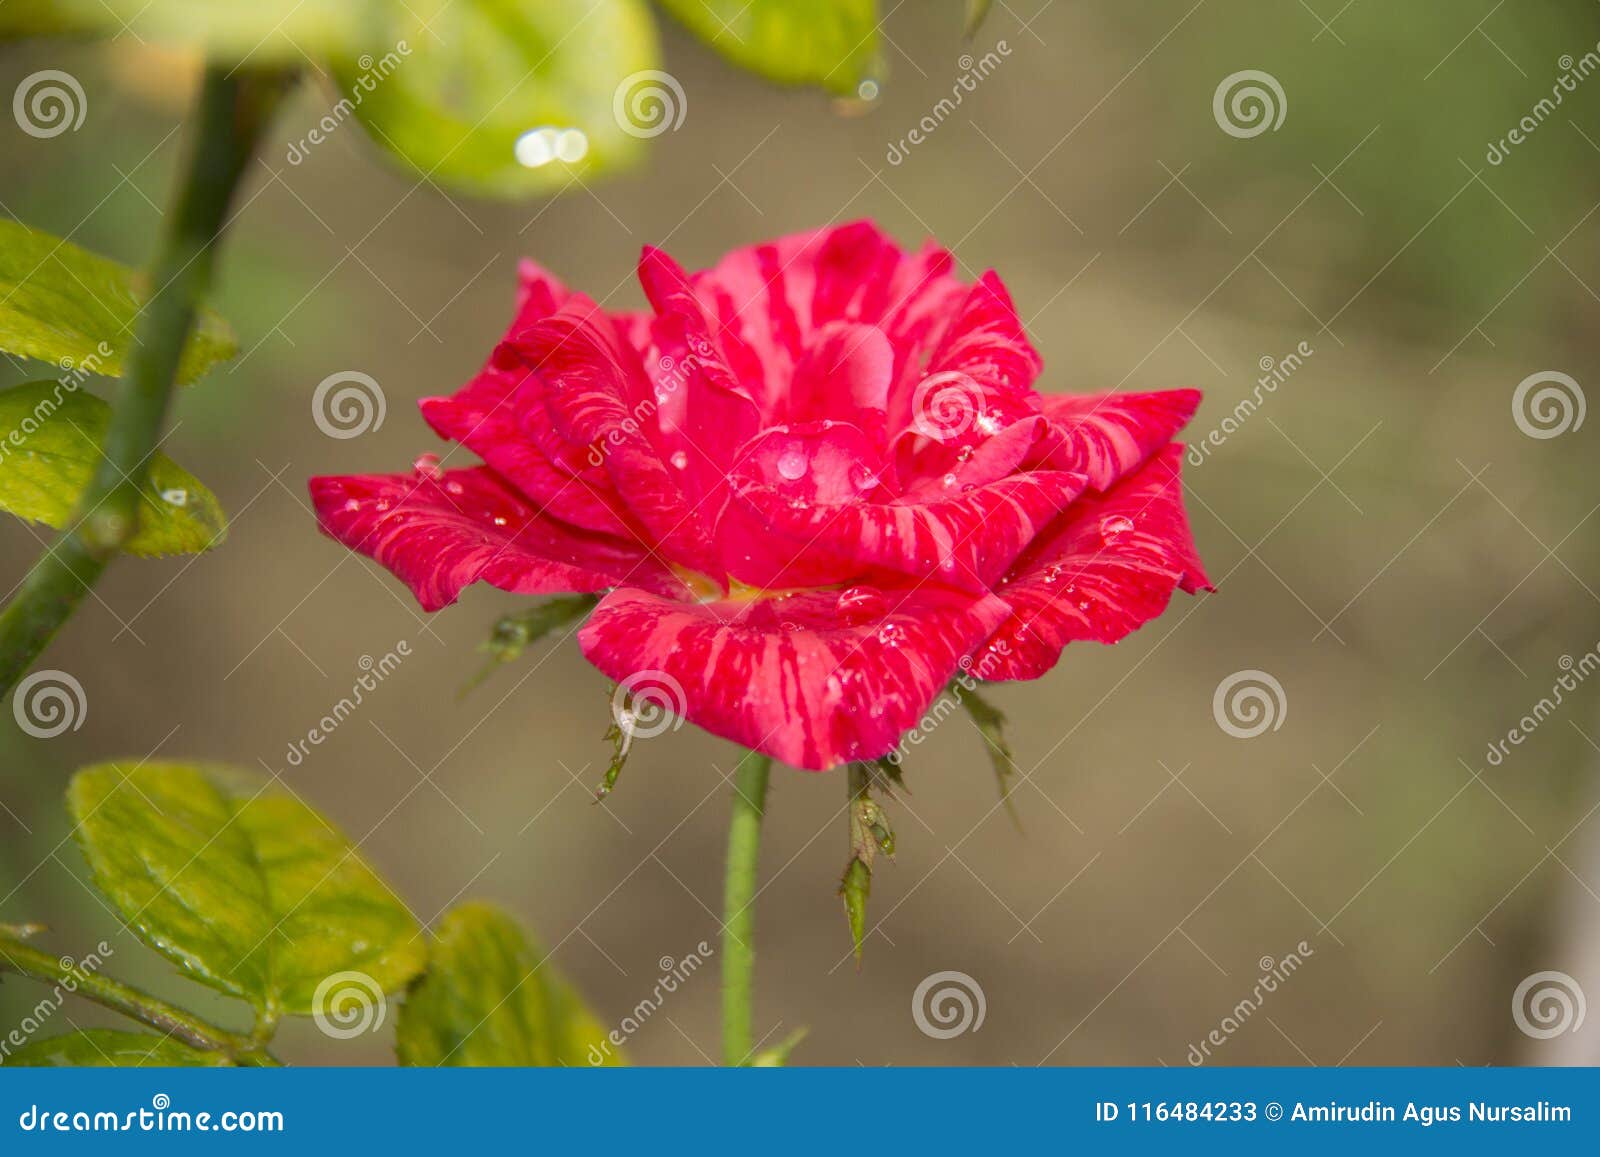 A Rose Pink Flower Mawar Berduri Bunga Mawar Stock Image